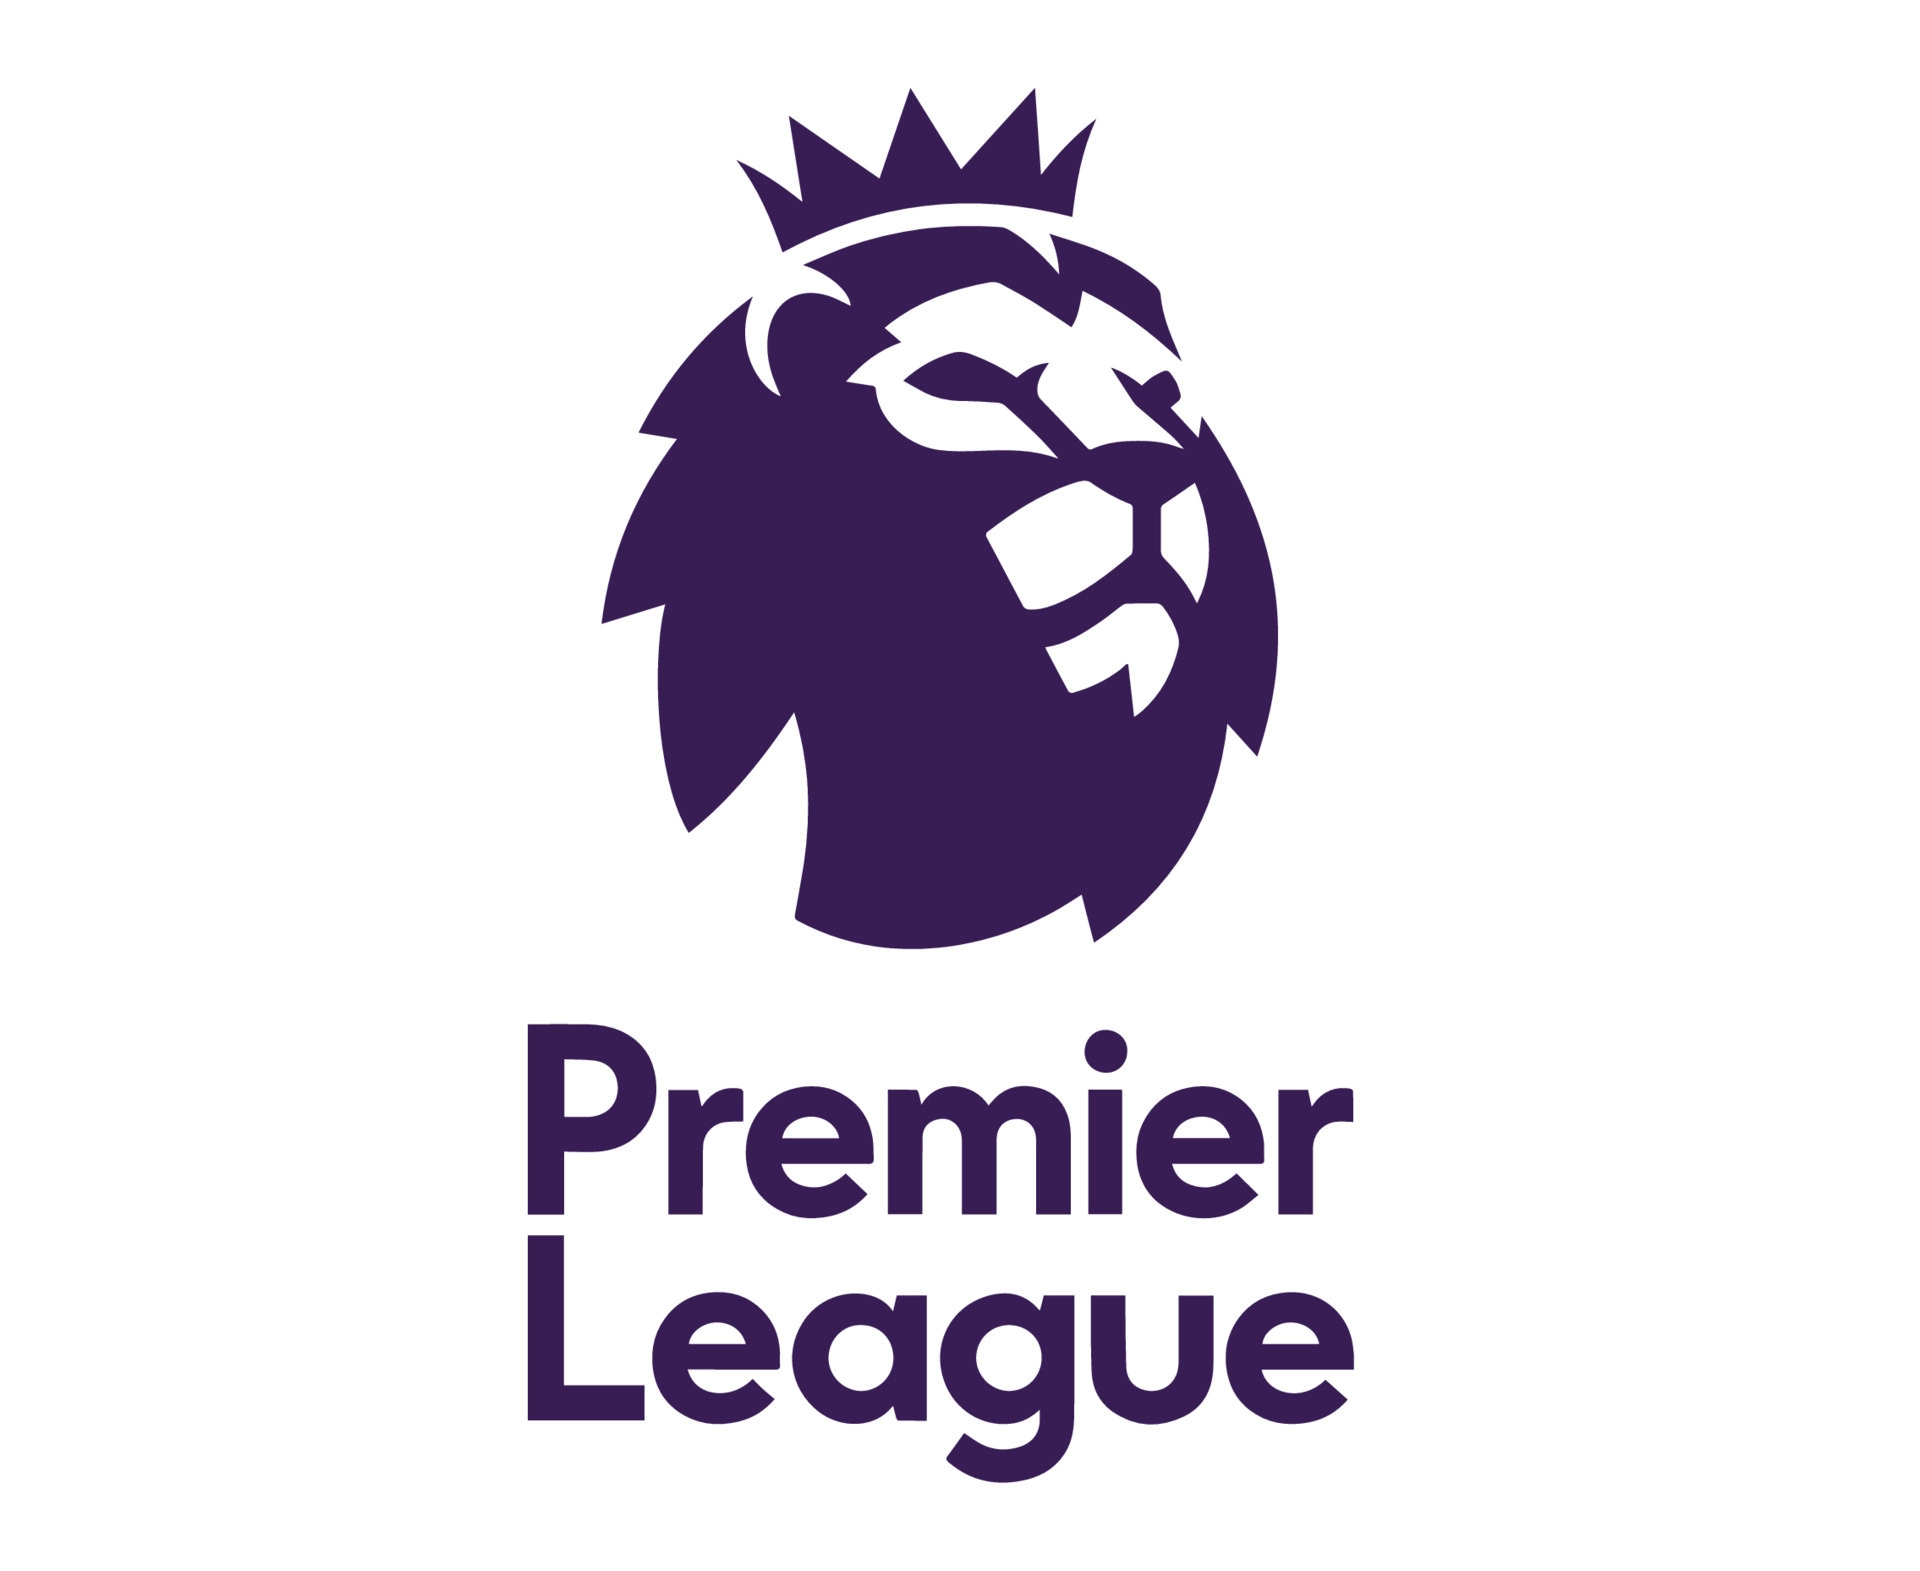 Image of the Premier League's logo.